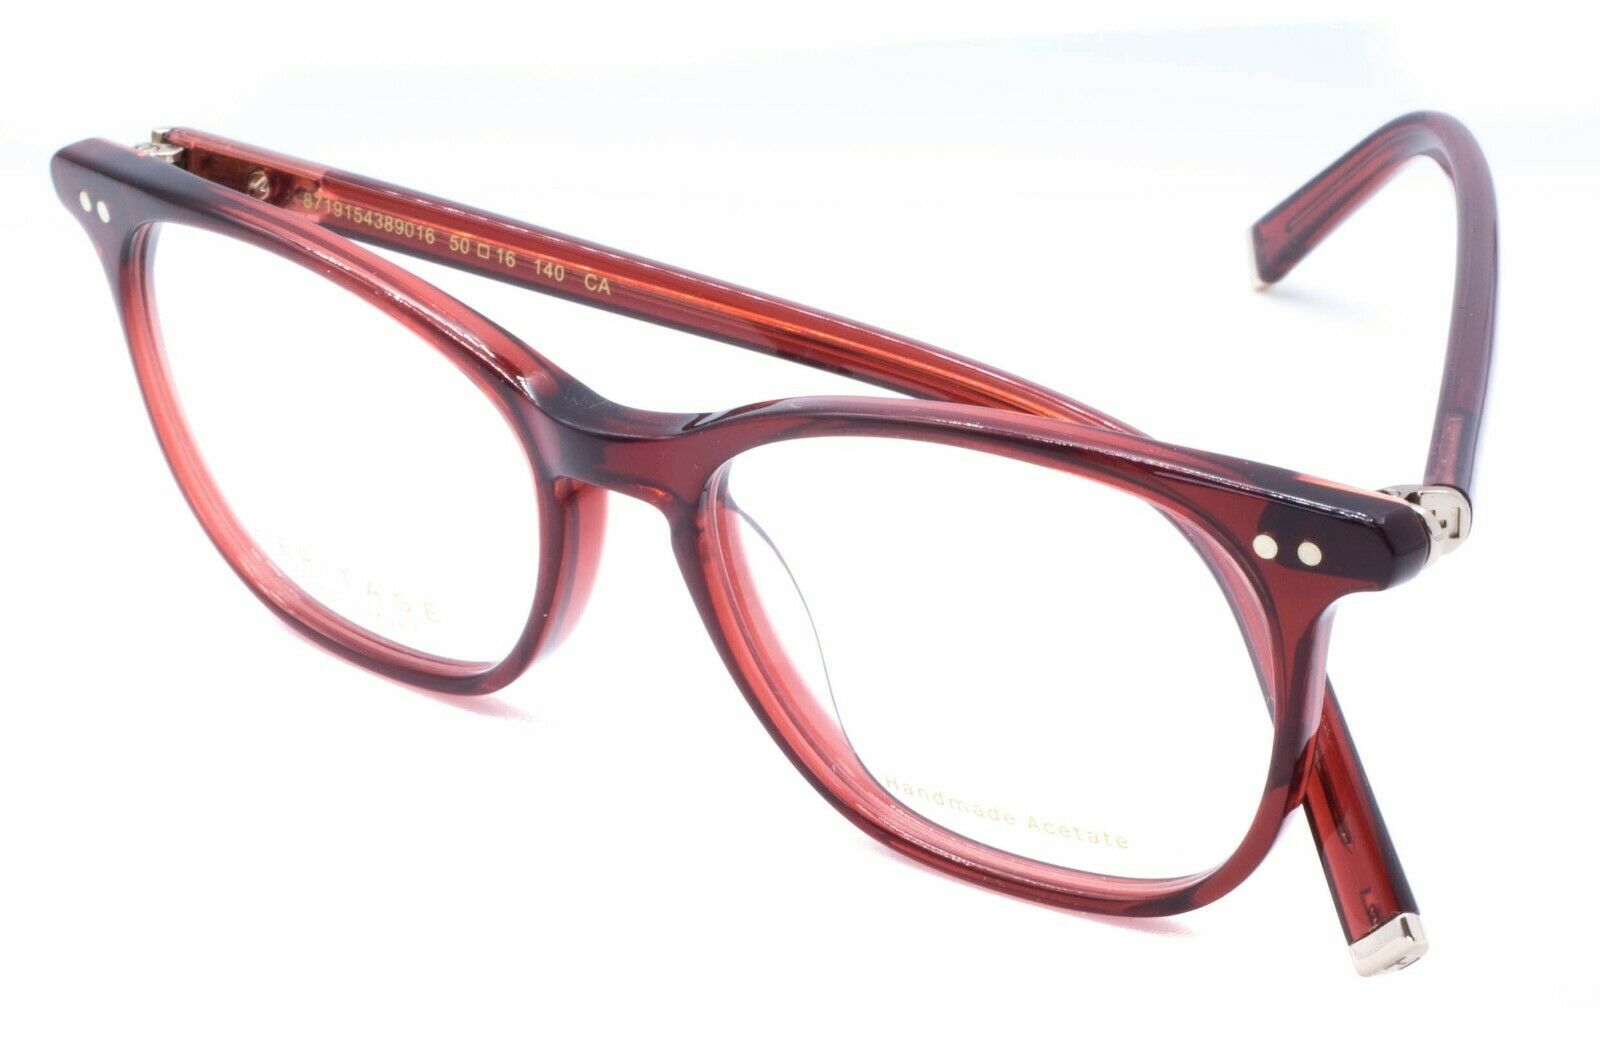 HERITAGE Iconic Luxury HEHF14 RR Eyewear FRAMES Eyeglasses RX Optical Glasses